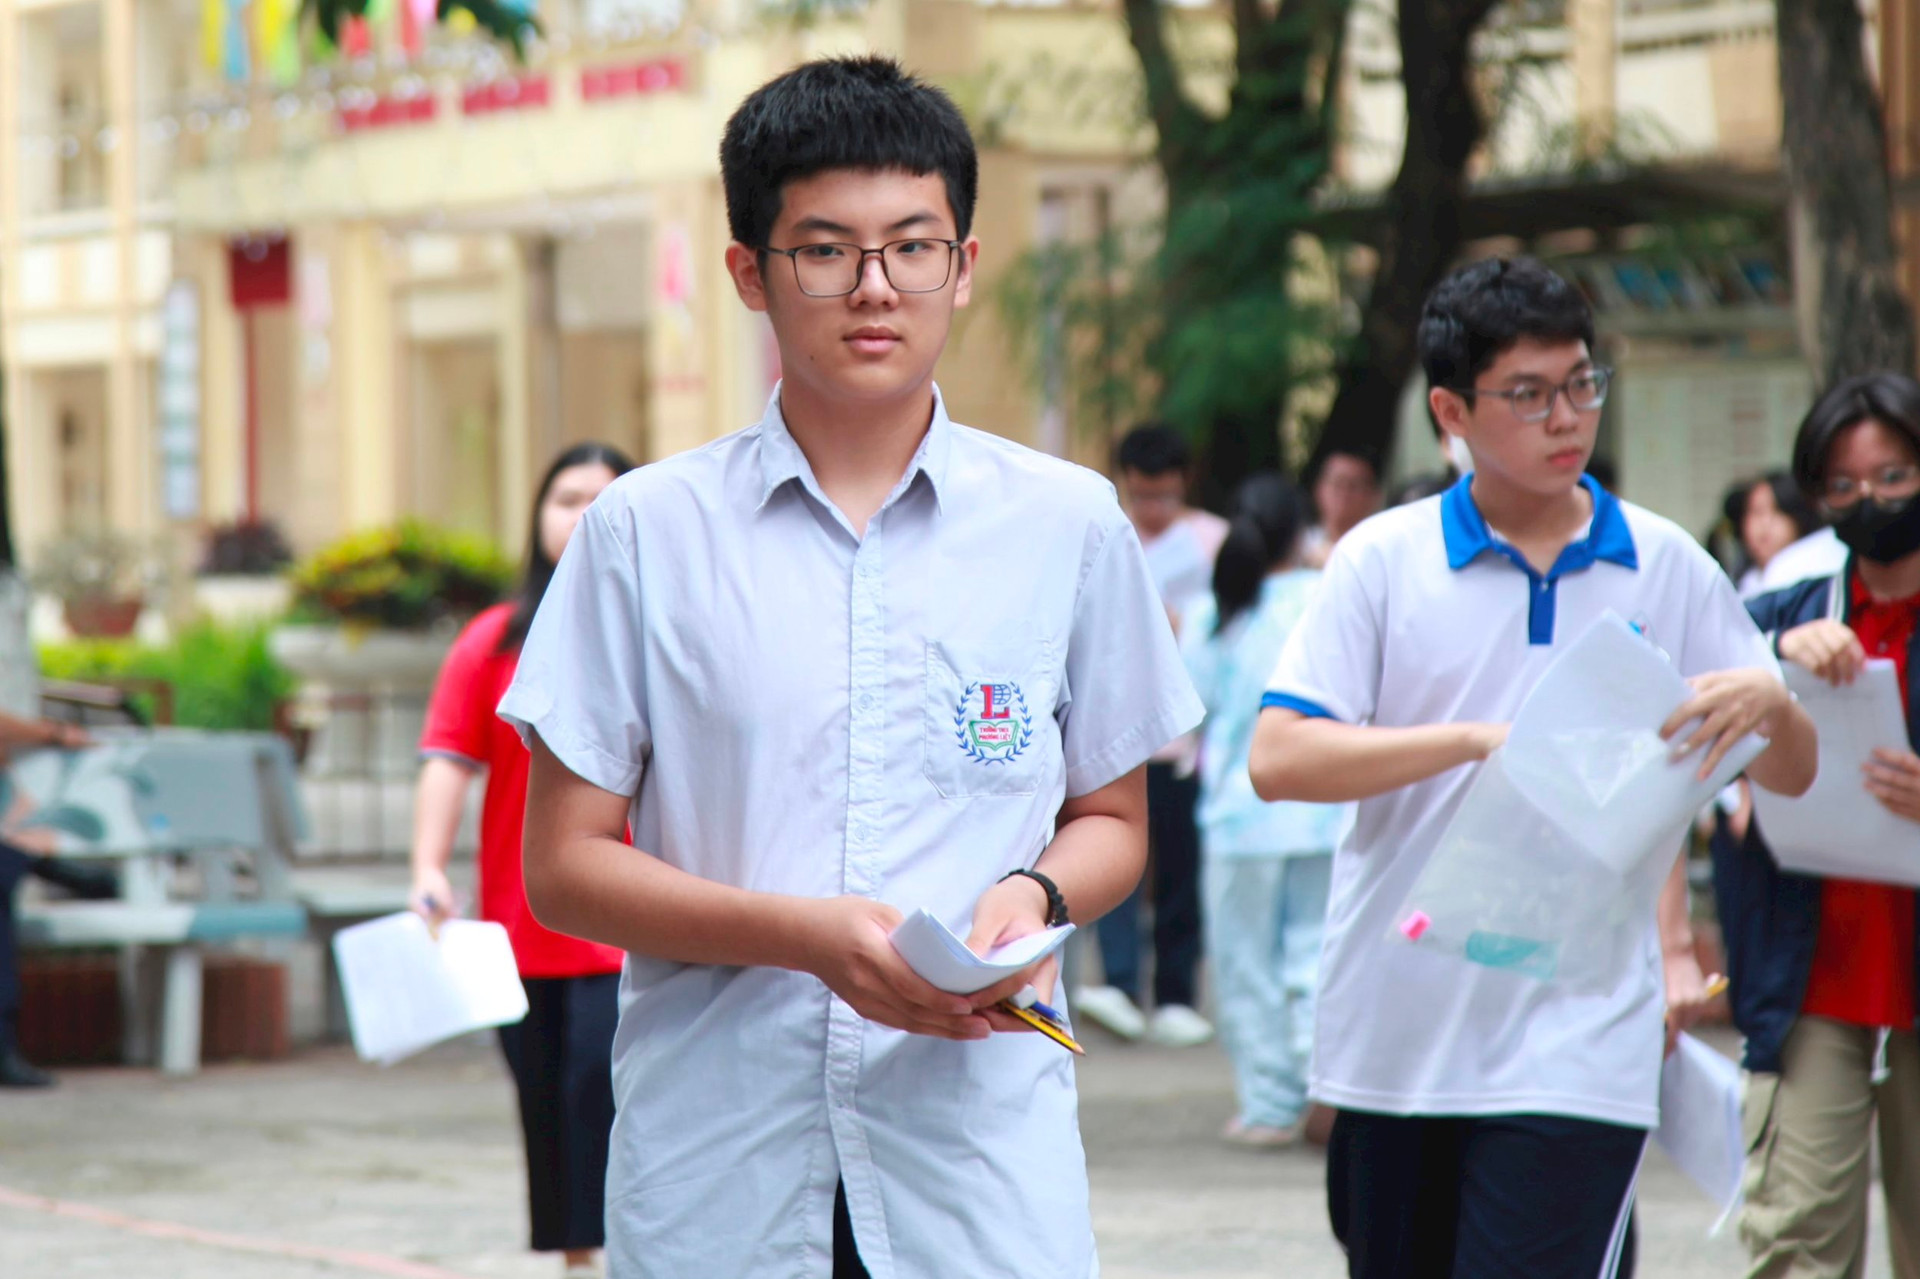 Thí sinh Hà Nội đã hoàn thành 3 bài thi vào lớp 10 trường THPT công lập. Ảnh: Phương Thảo